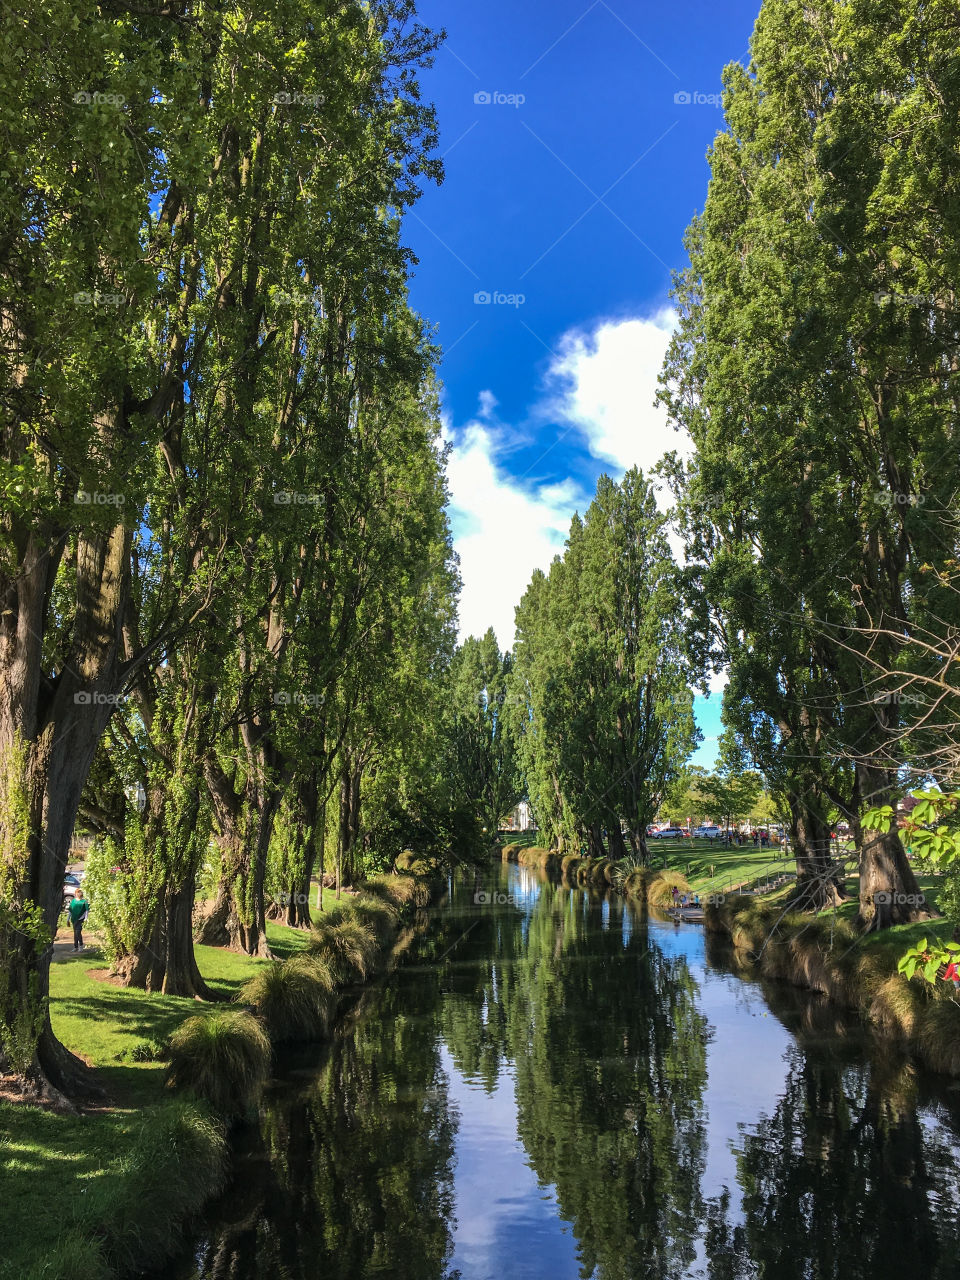 Avon River / Christchurch, New Zealand